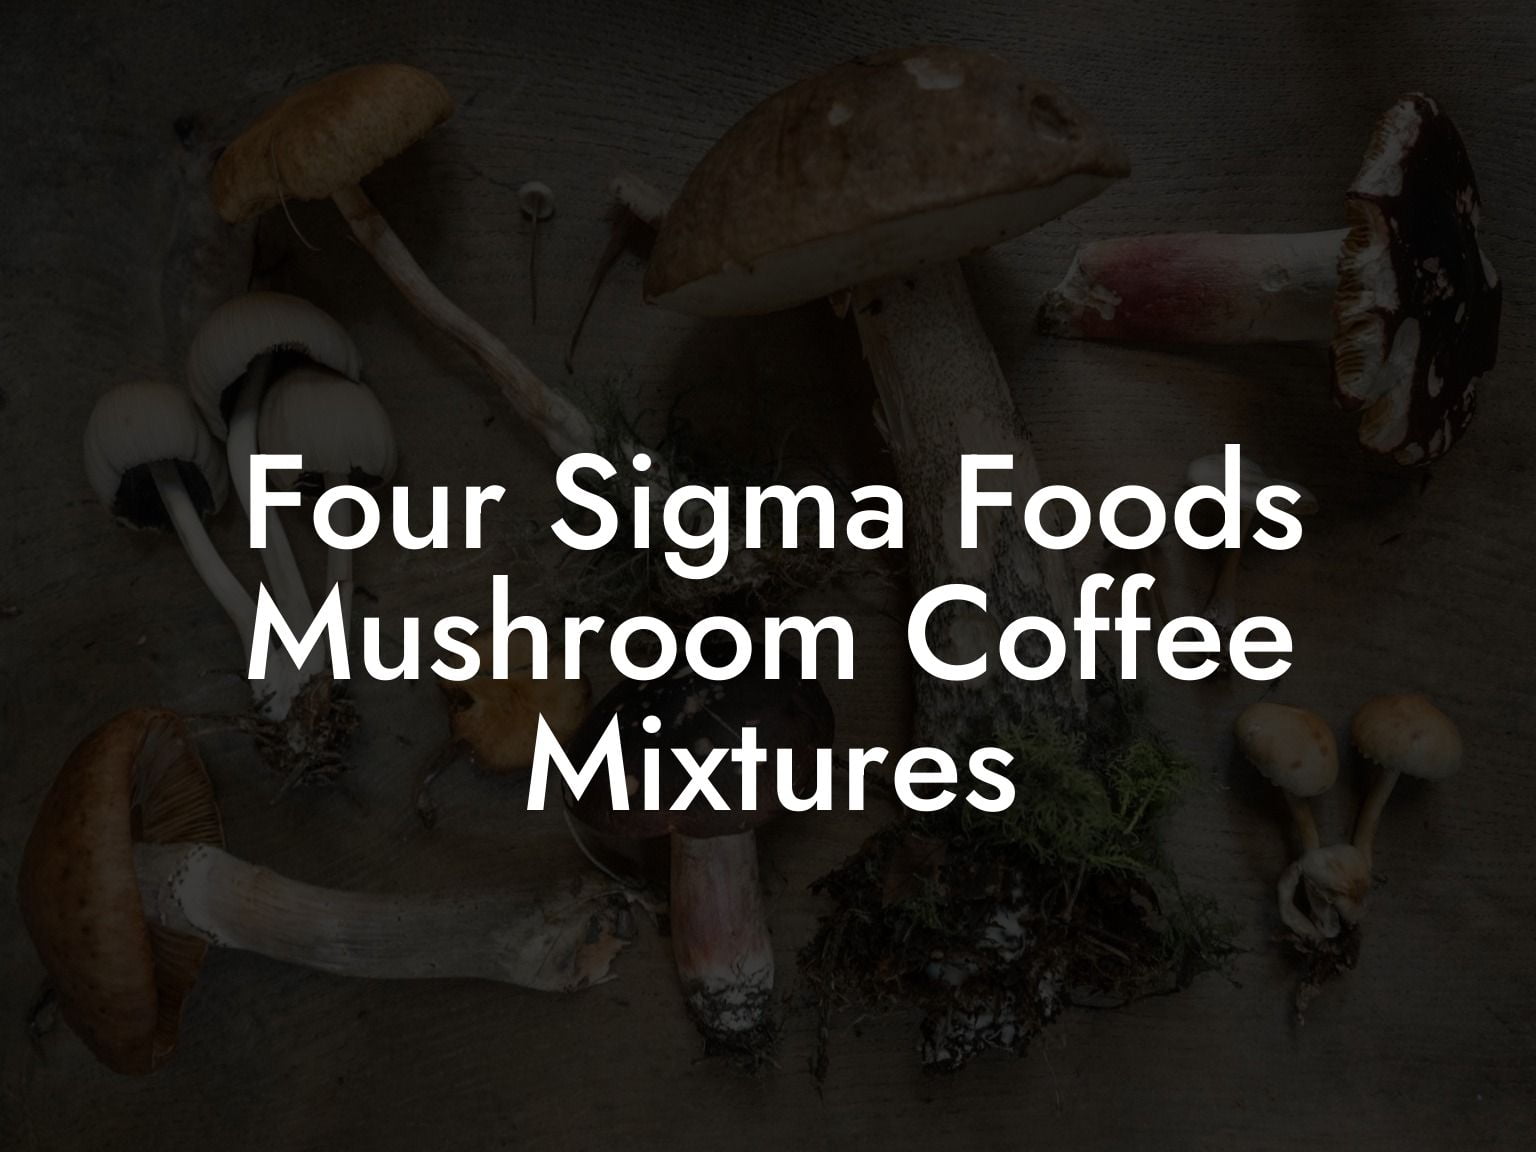 Four Sigma Food's Mushroom Coffee Mixtures